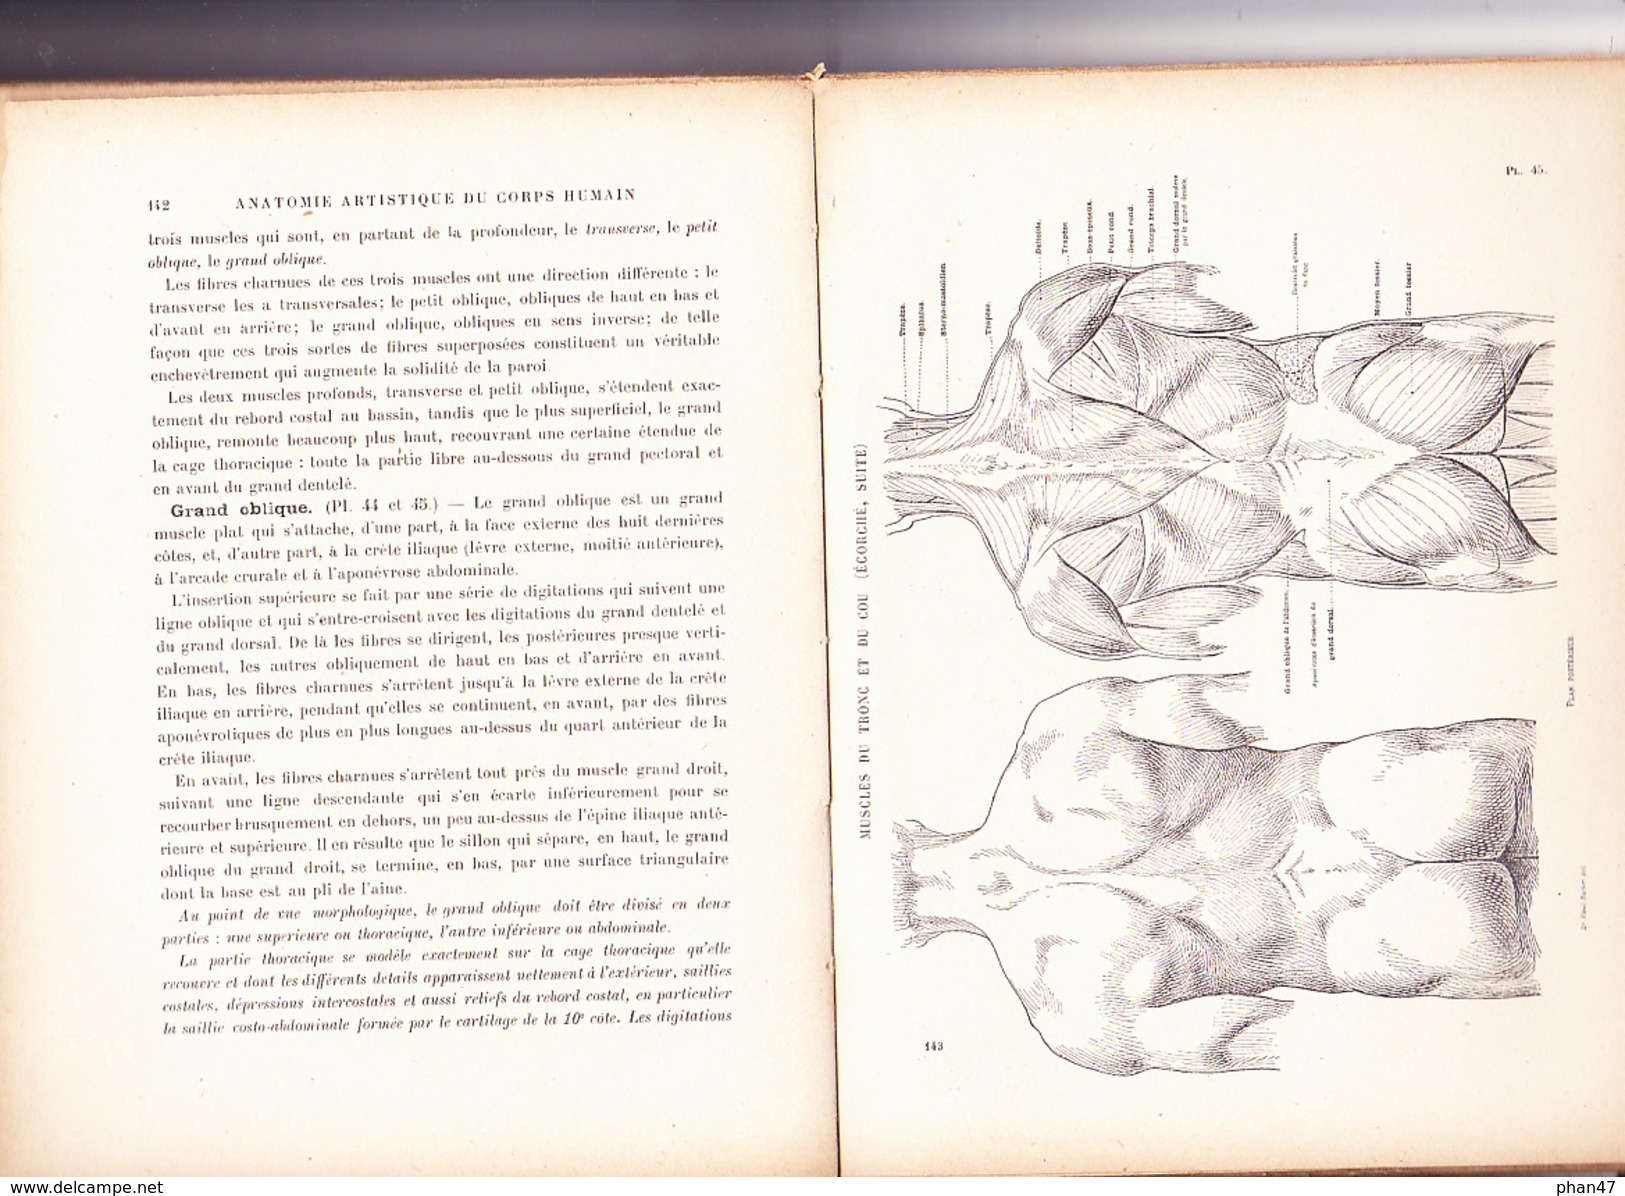 NOUVELLE ANATOMIE ARTISTIQUE; ELEMENTS D'ANATOMIE: L'HOMME Par Docteur Paul RICHER, Librairie Plon 1946 - Art